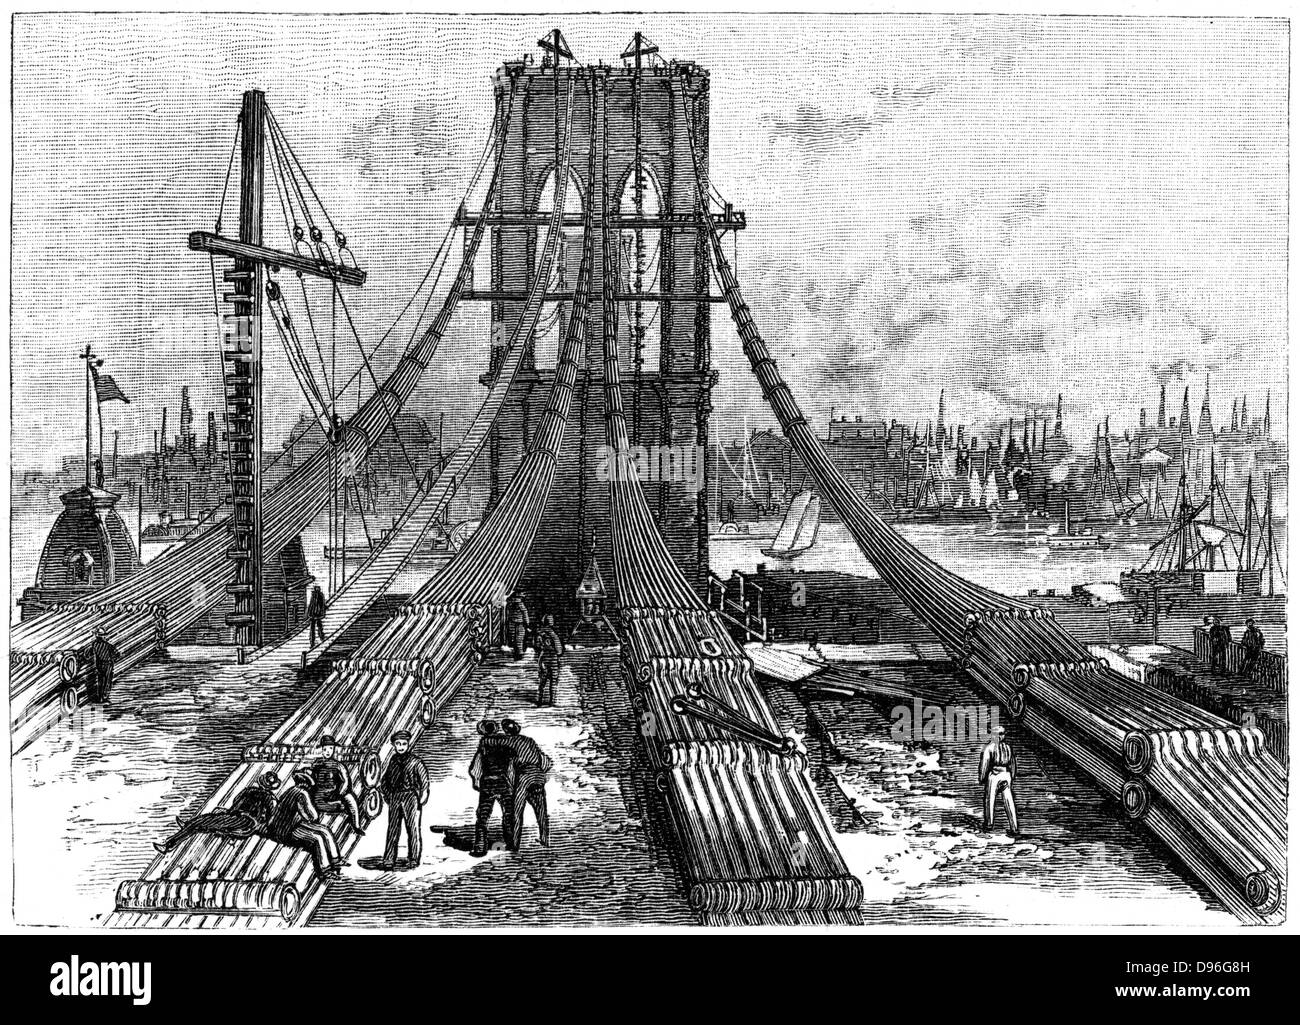 Brooklyn Suspension Bridge, New York, entwickelt und von John August Roebling (1806-1869) und sein Sohn Washington August Roebling (1837-1926) erbaut. Eröffnet 1883. Kabel anchorage auf dem Brooklyn Ufer. Gravur 1883. Stockfoto